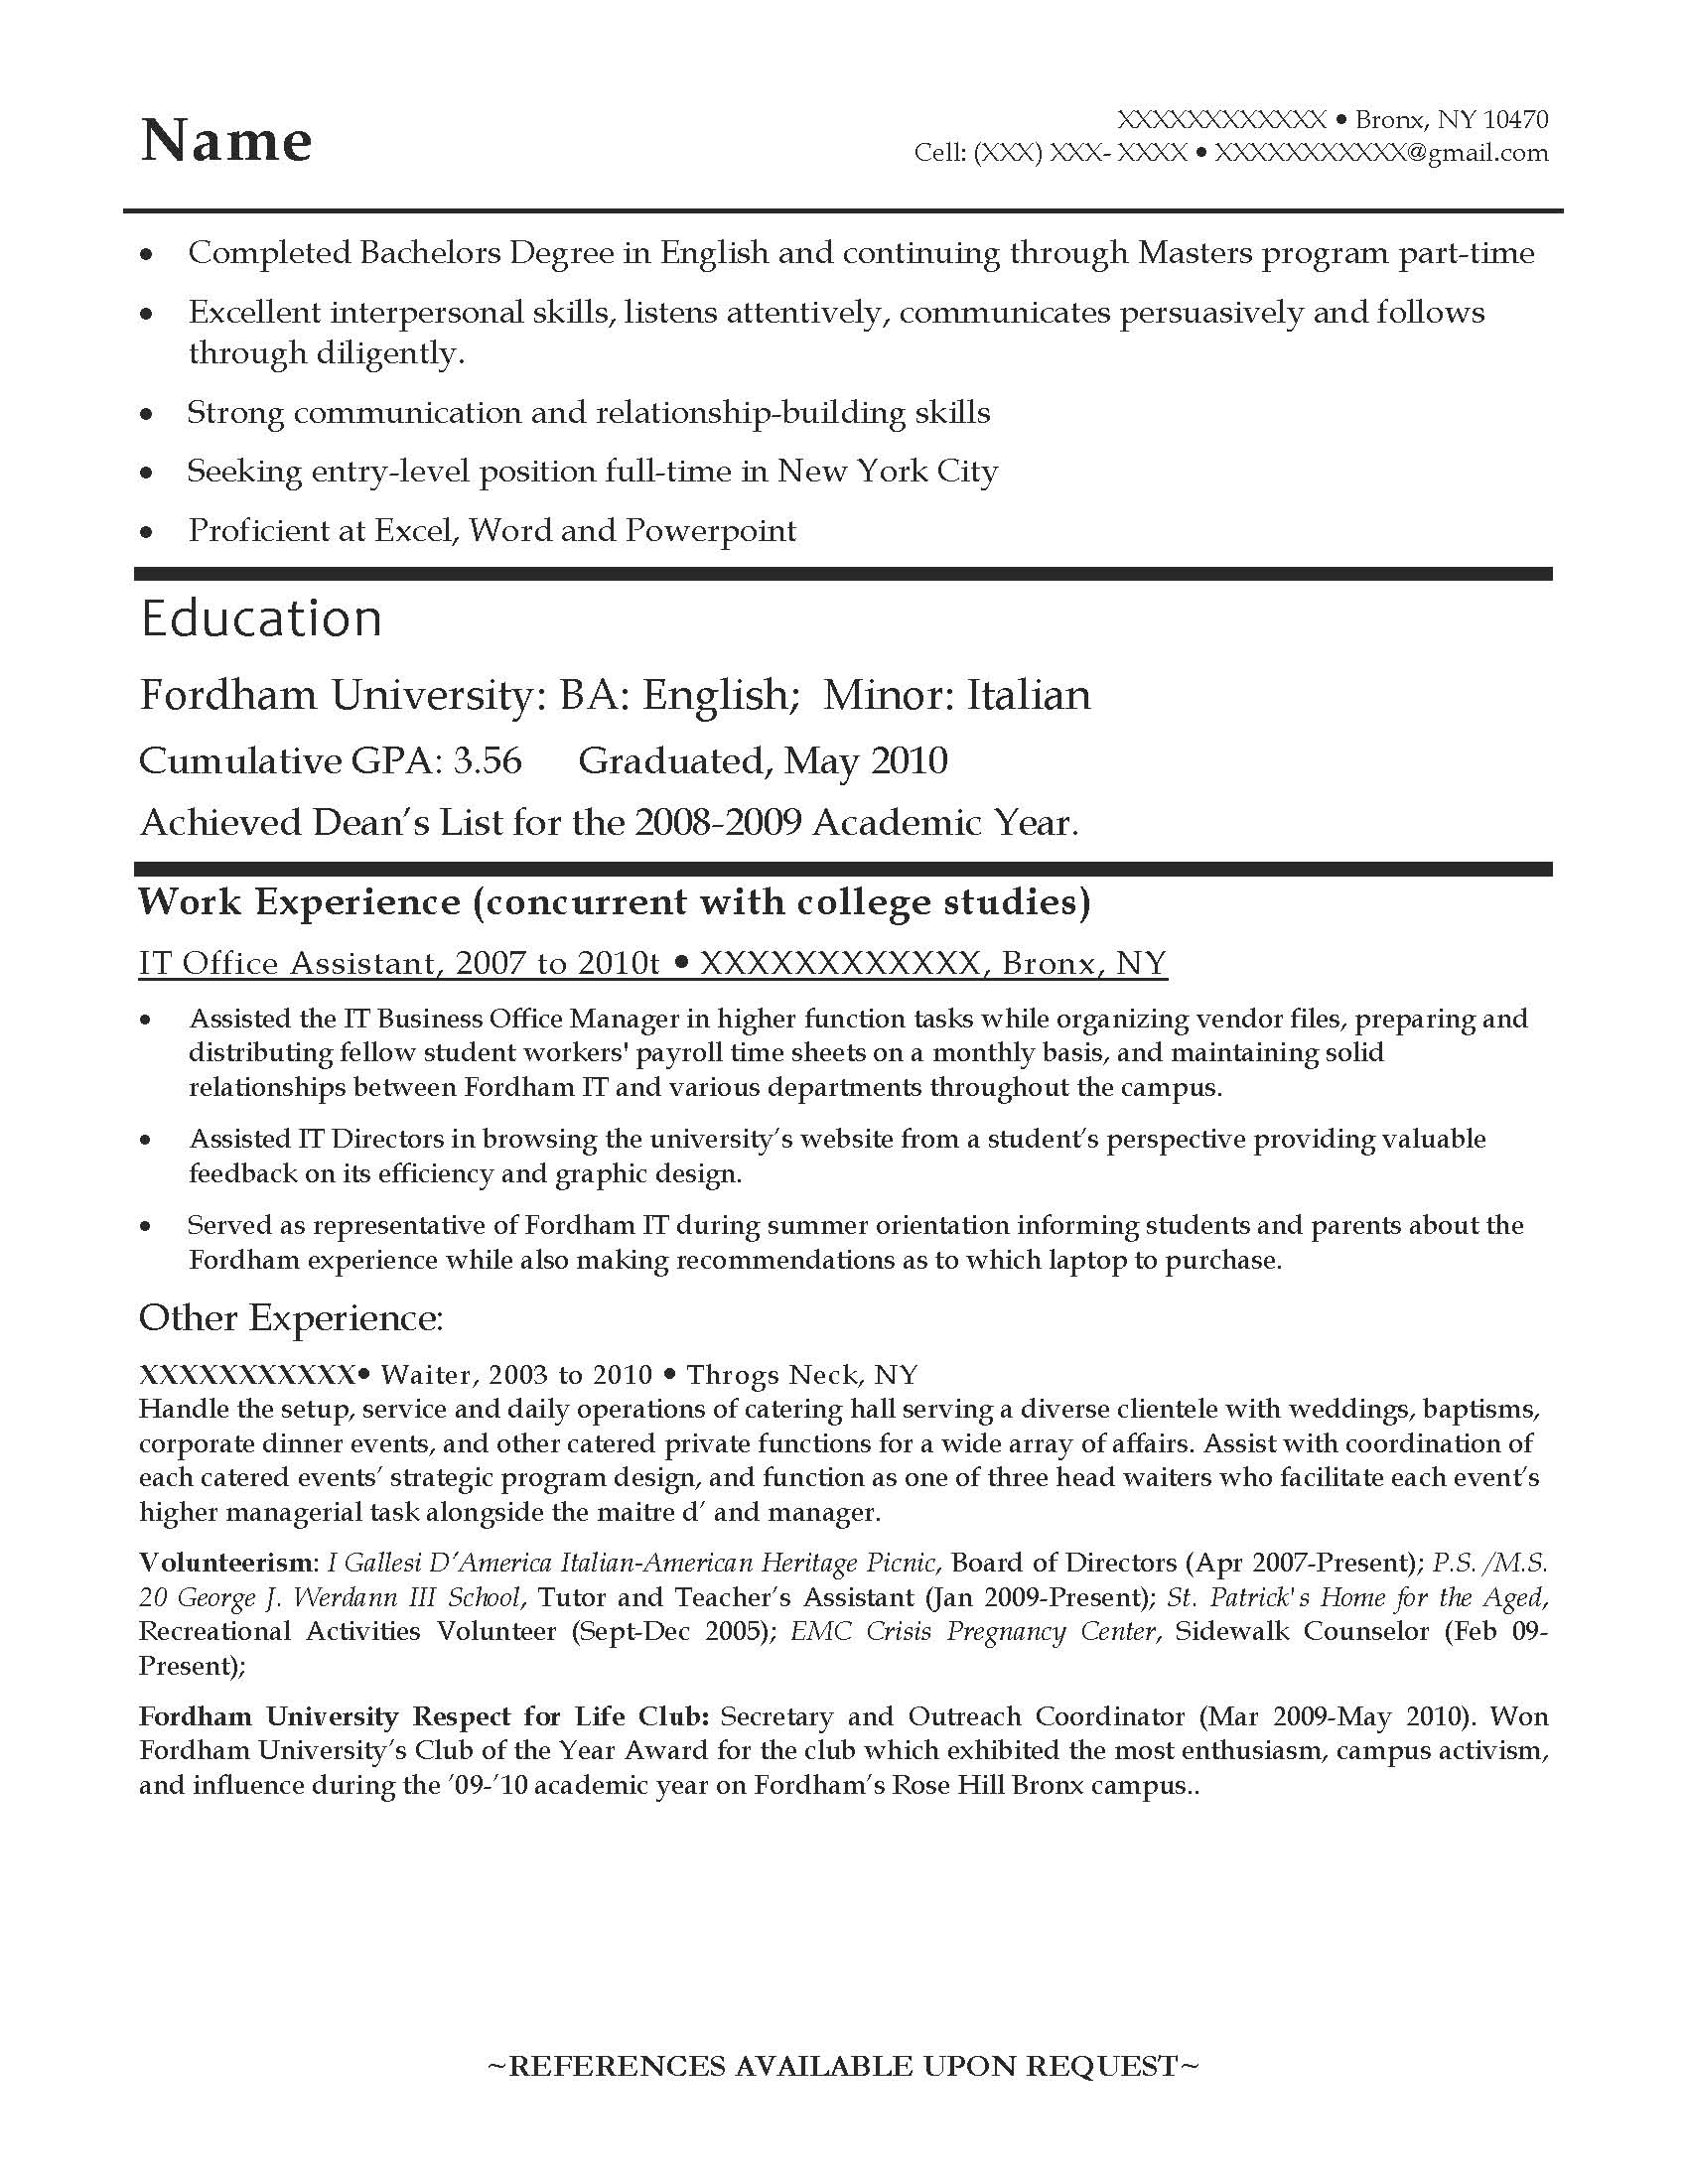 resume template for entry level teacher